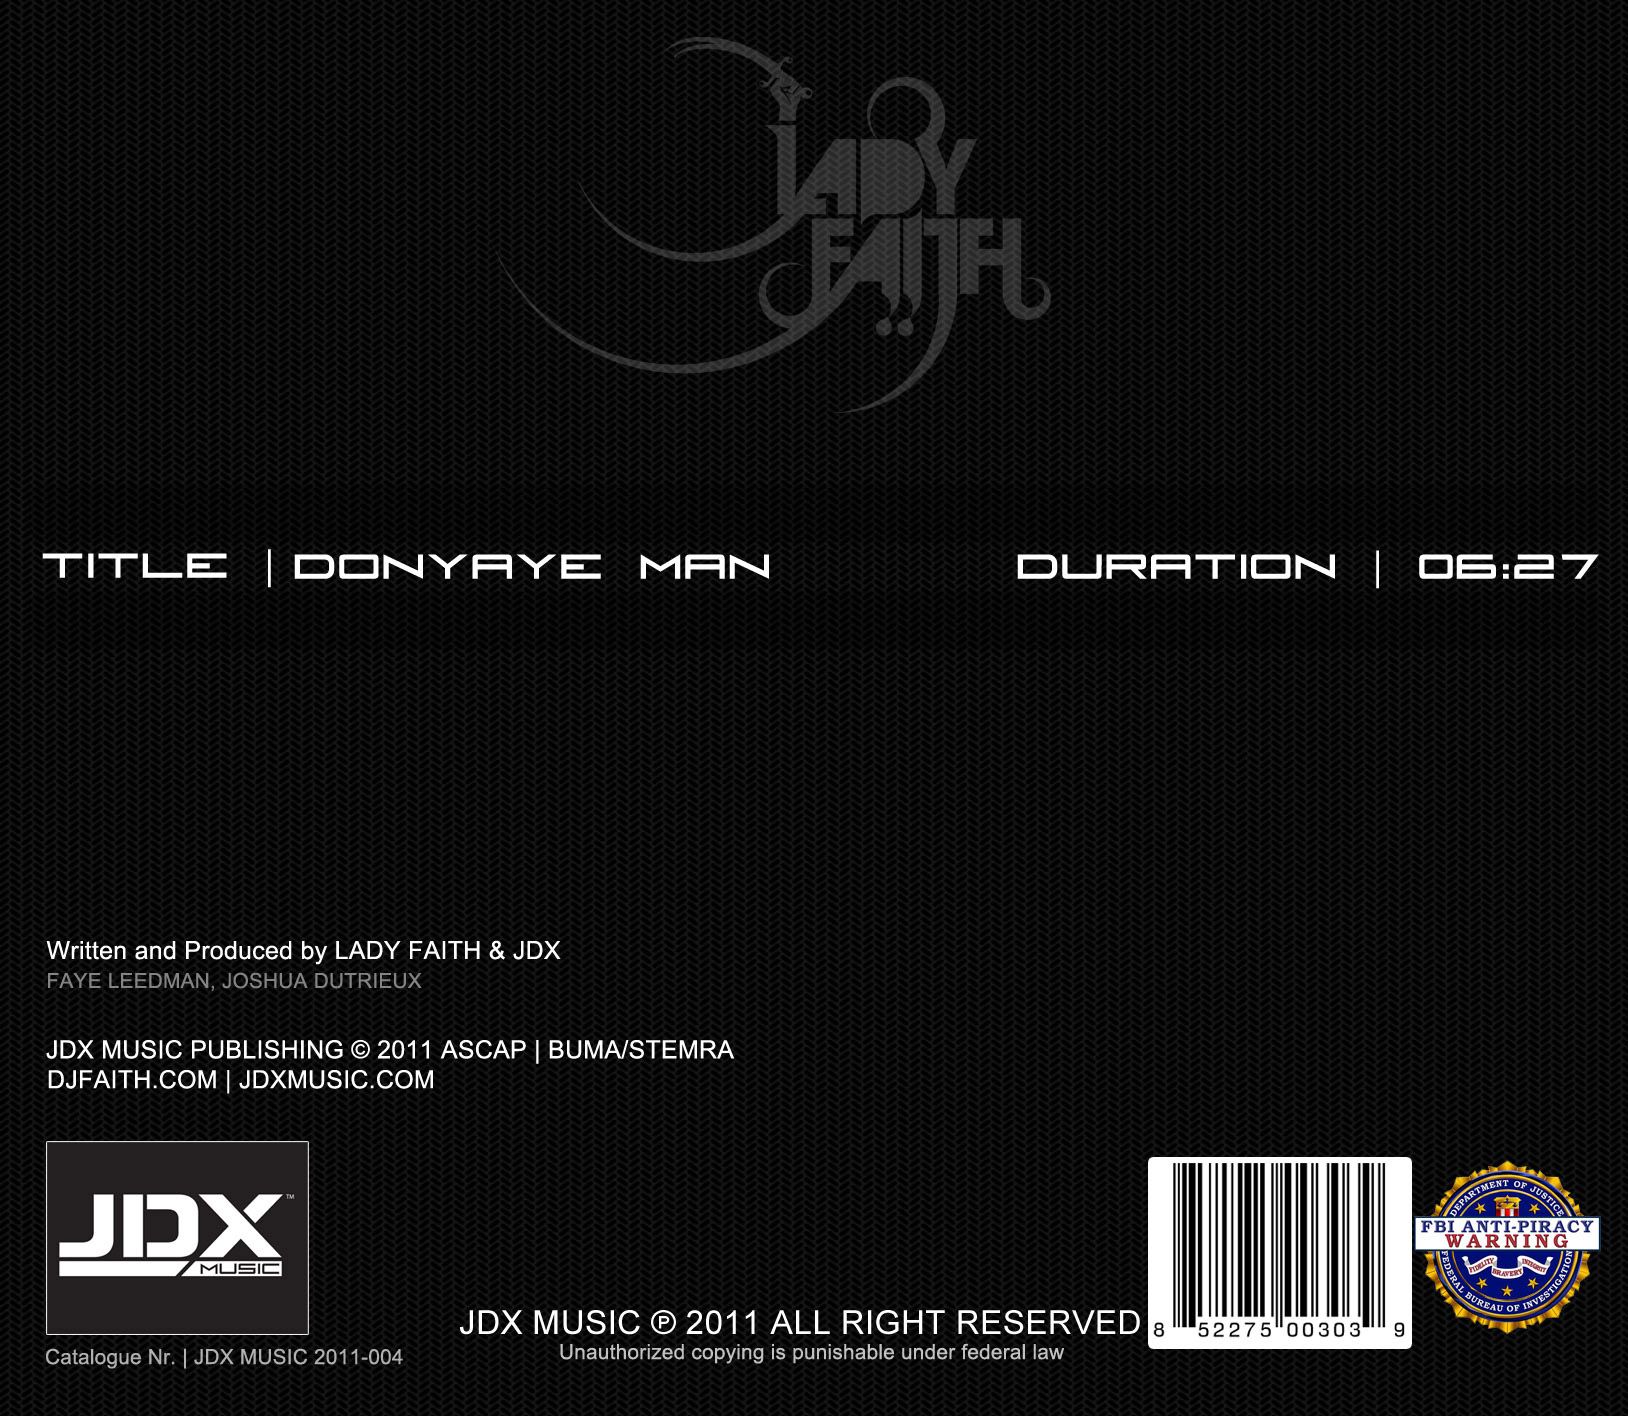 Lady Faith - Donyaye Man album art back.